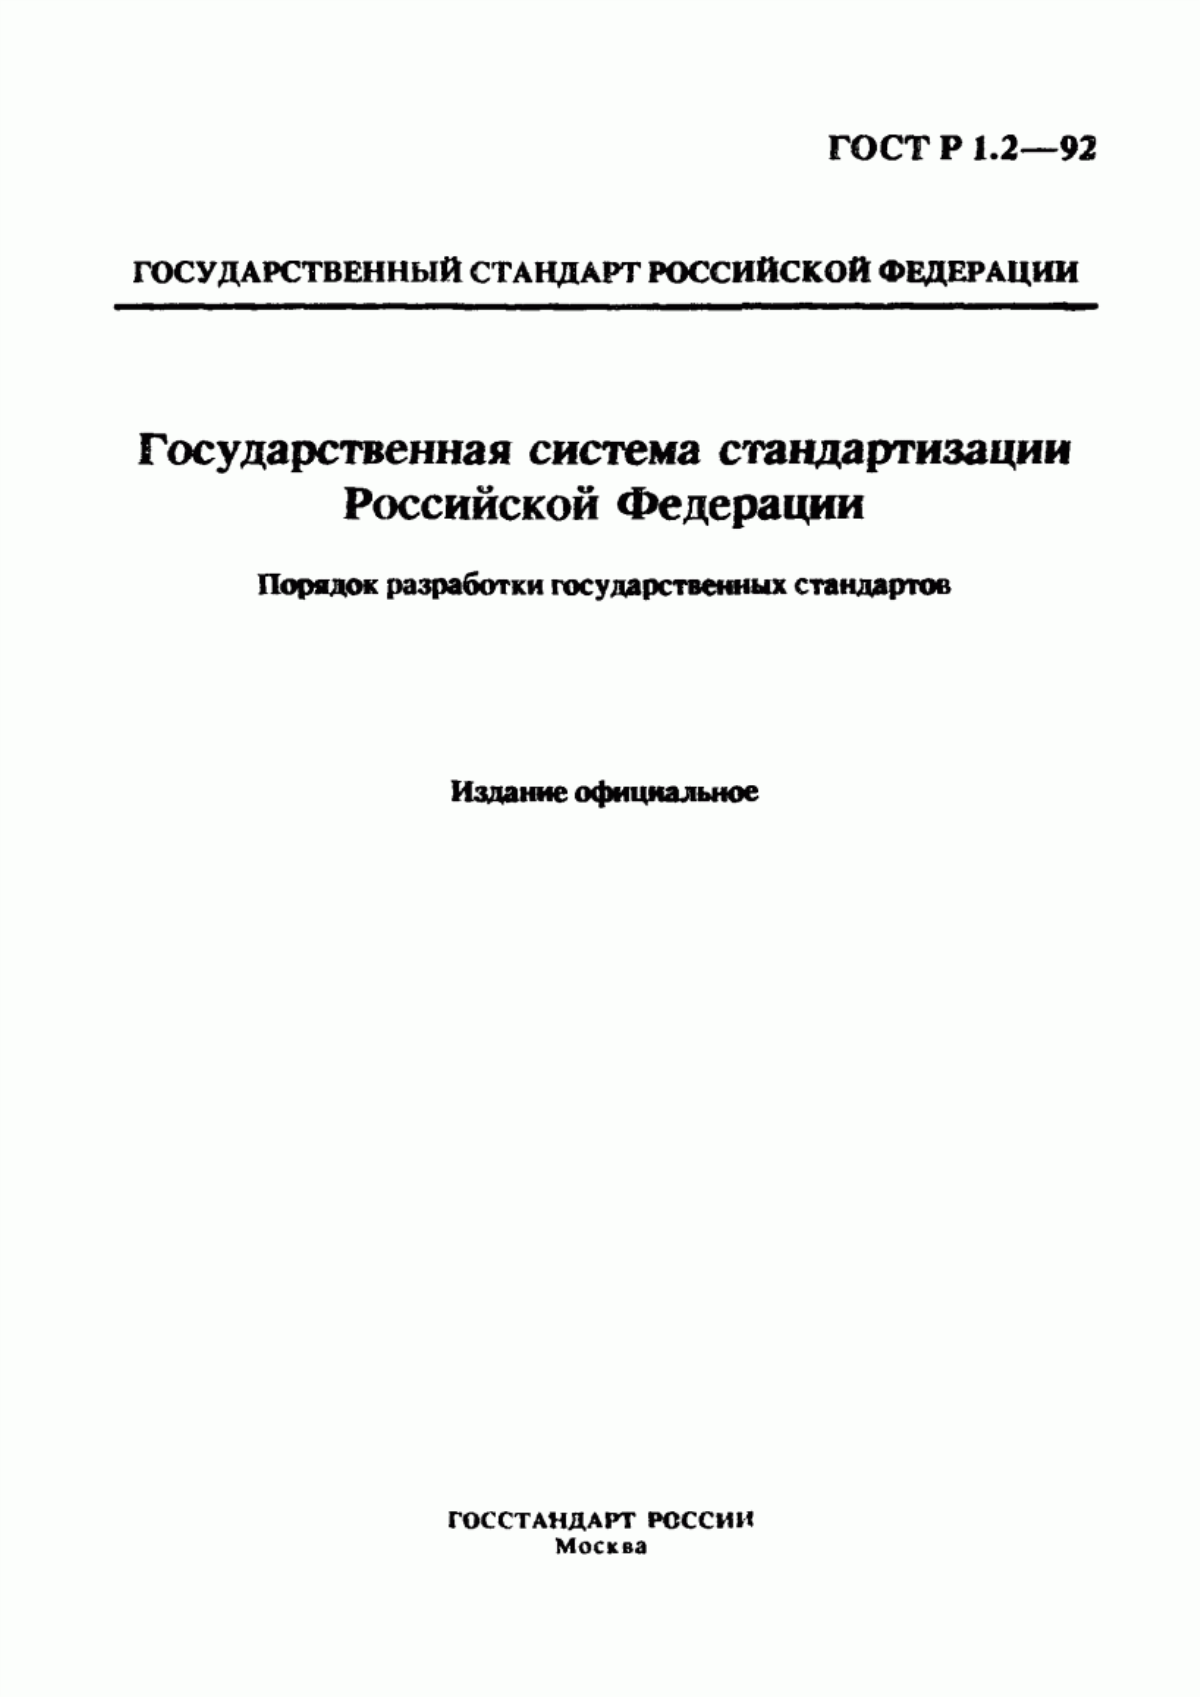 ГОСТ Р 1.2-92 Государственная система стандартизации Российской Федерации. Порядок разработки государственных стандартов